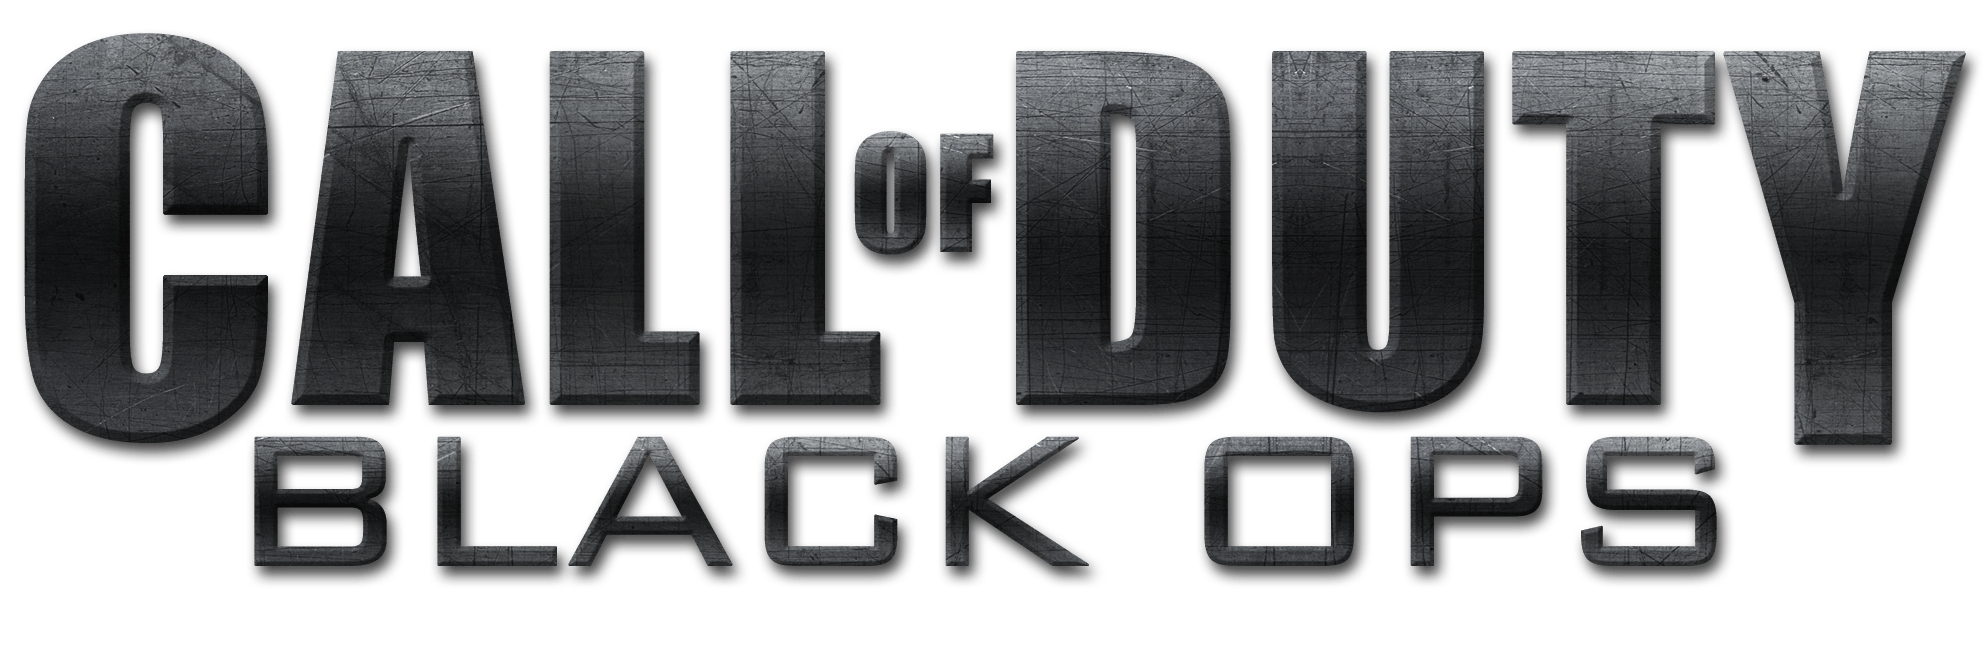 BO1 Logo - A mais completa loja de games de Belo Horizonte - Call of Duty Black ...